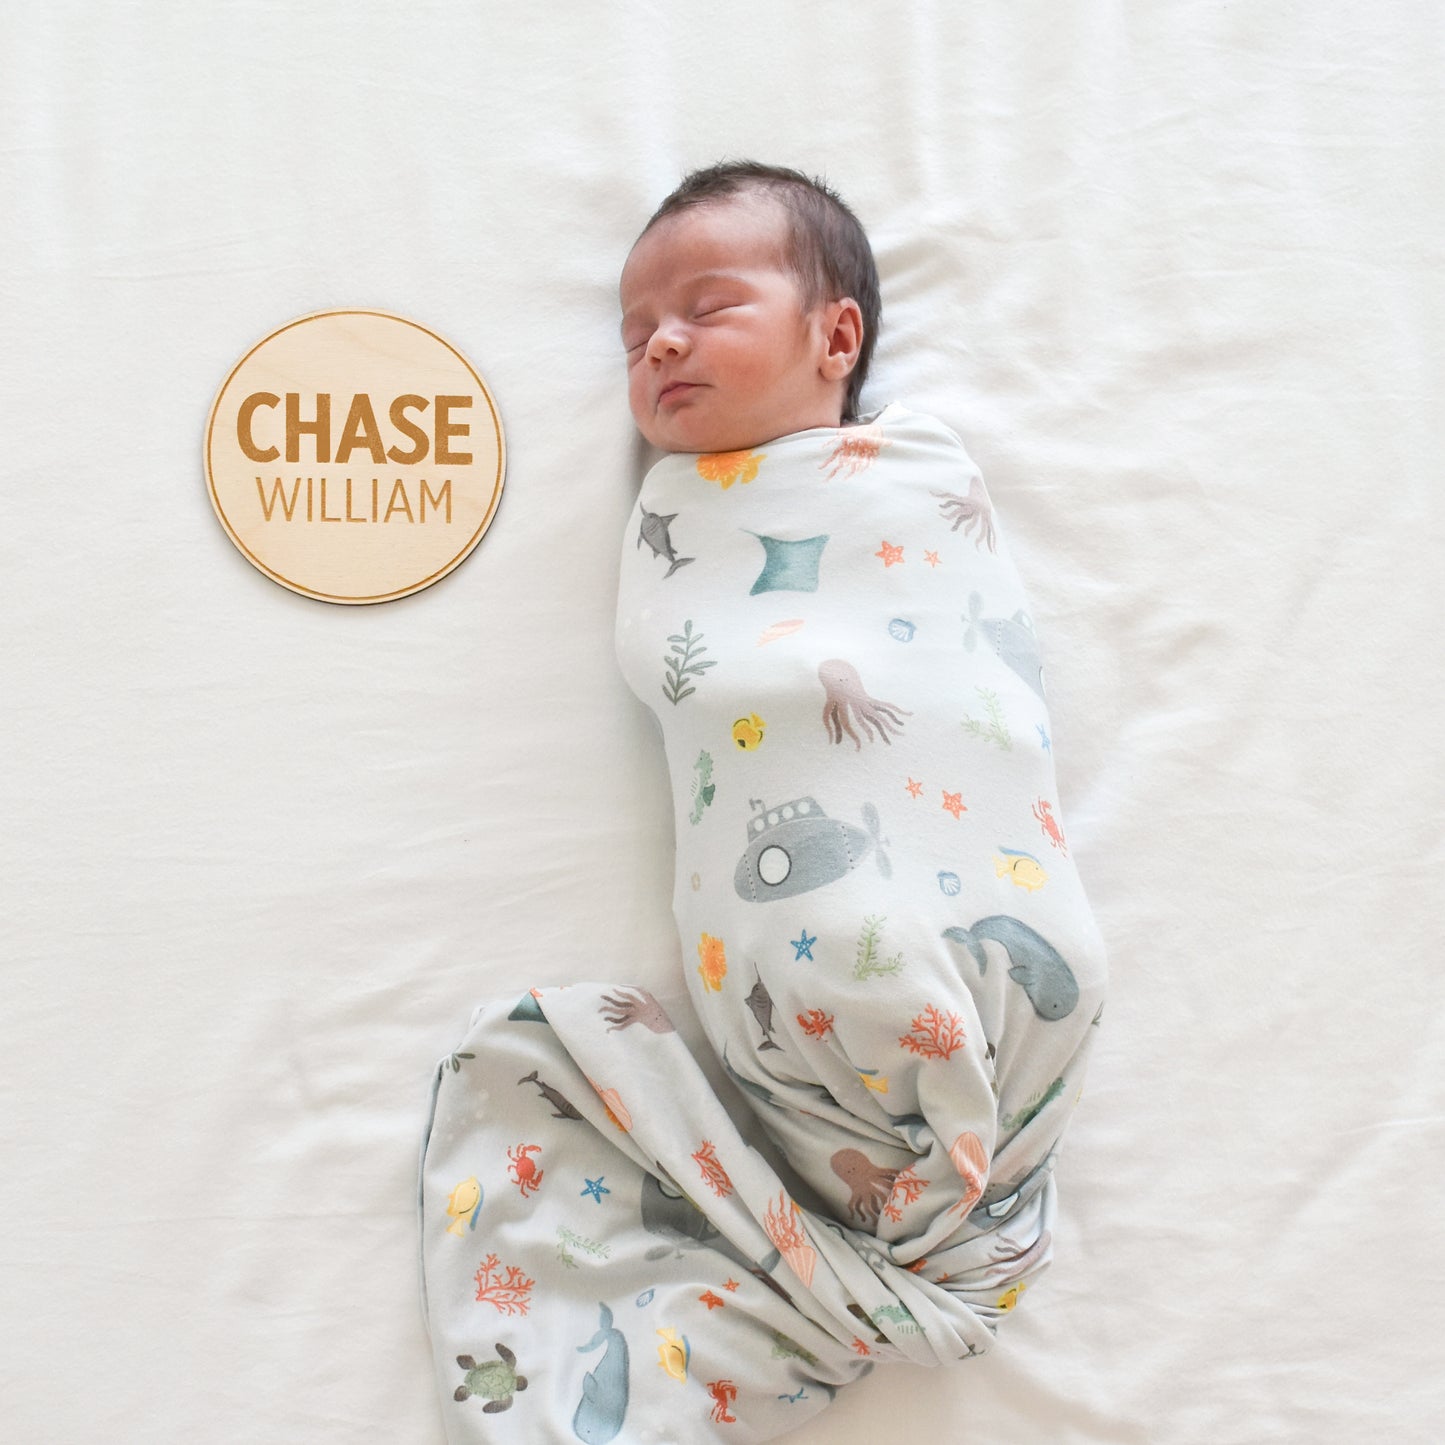 newborn photo with round name sign